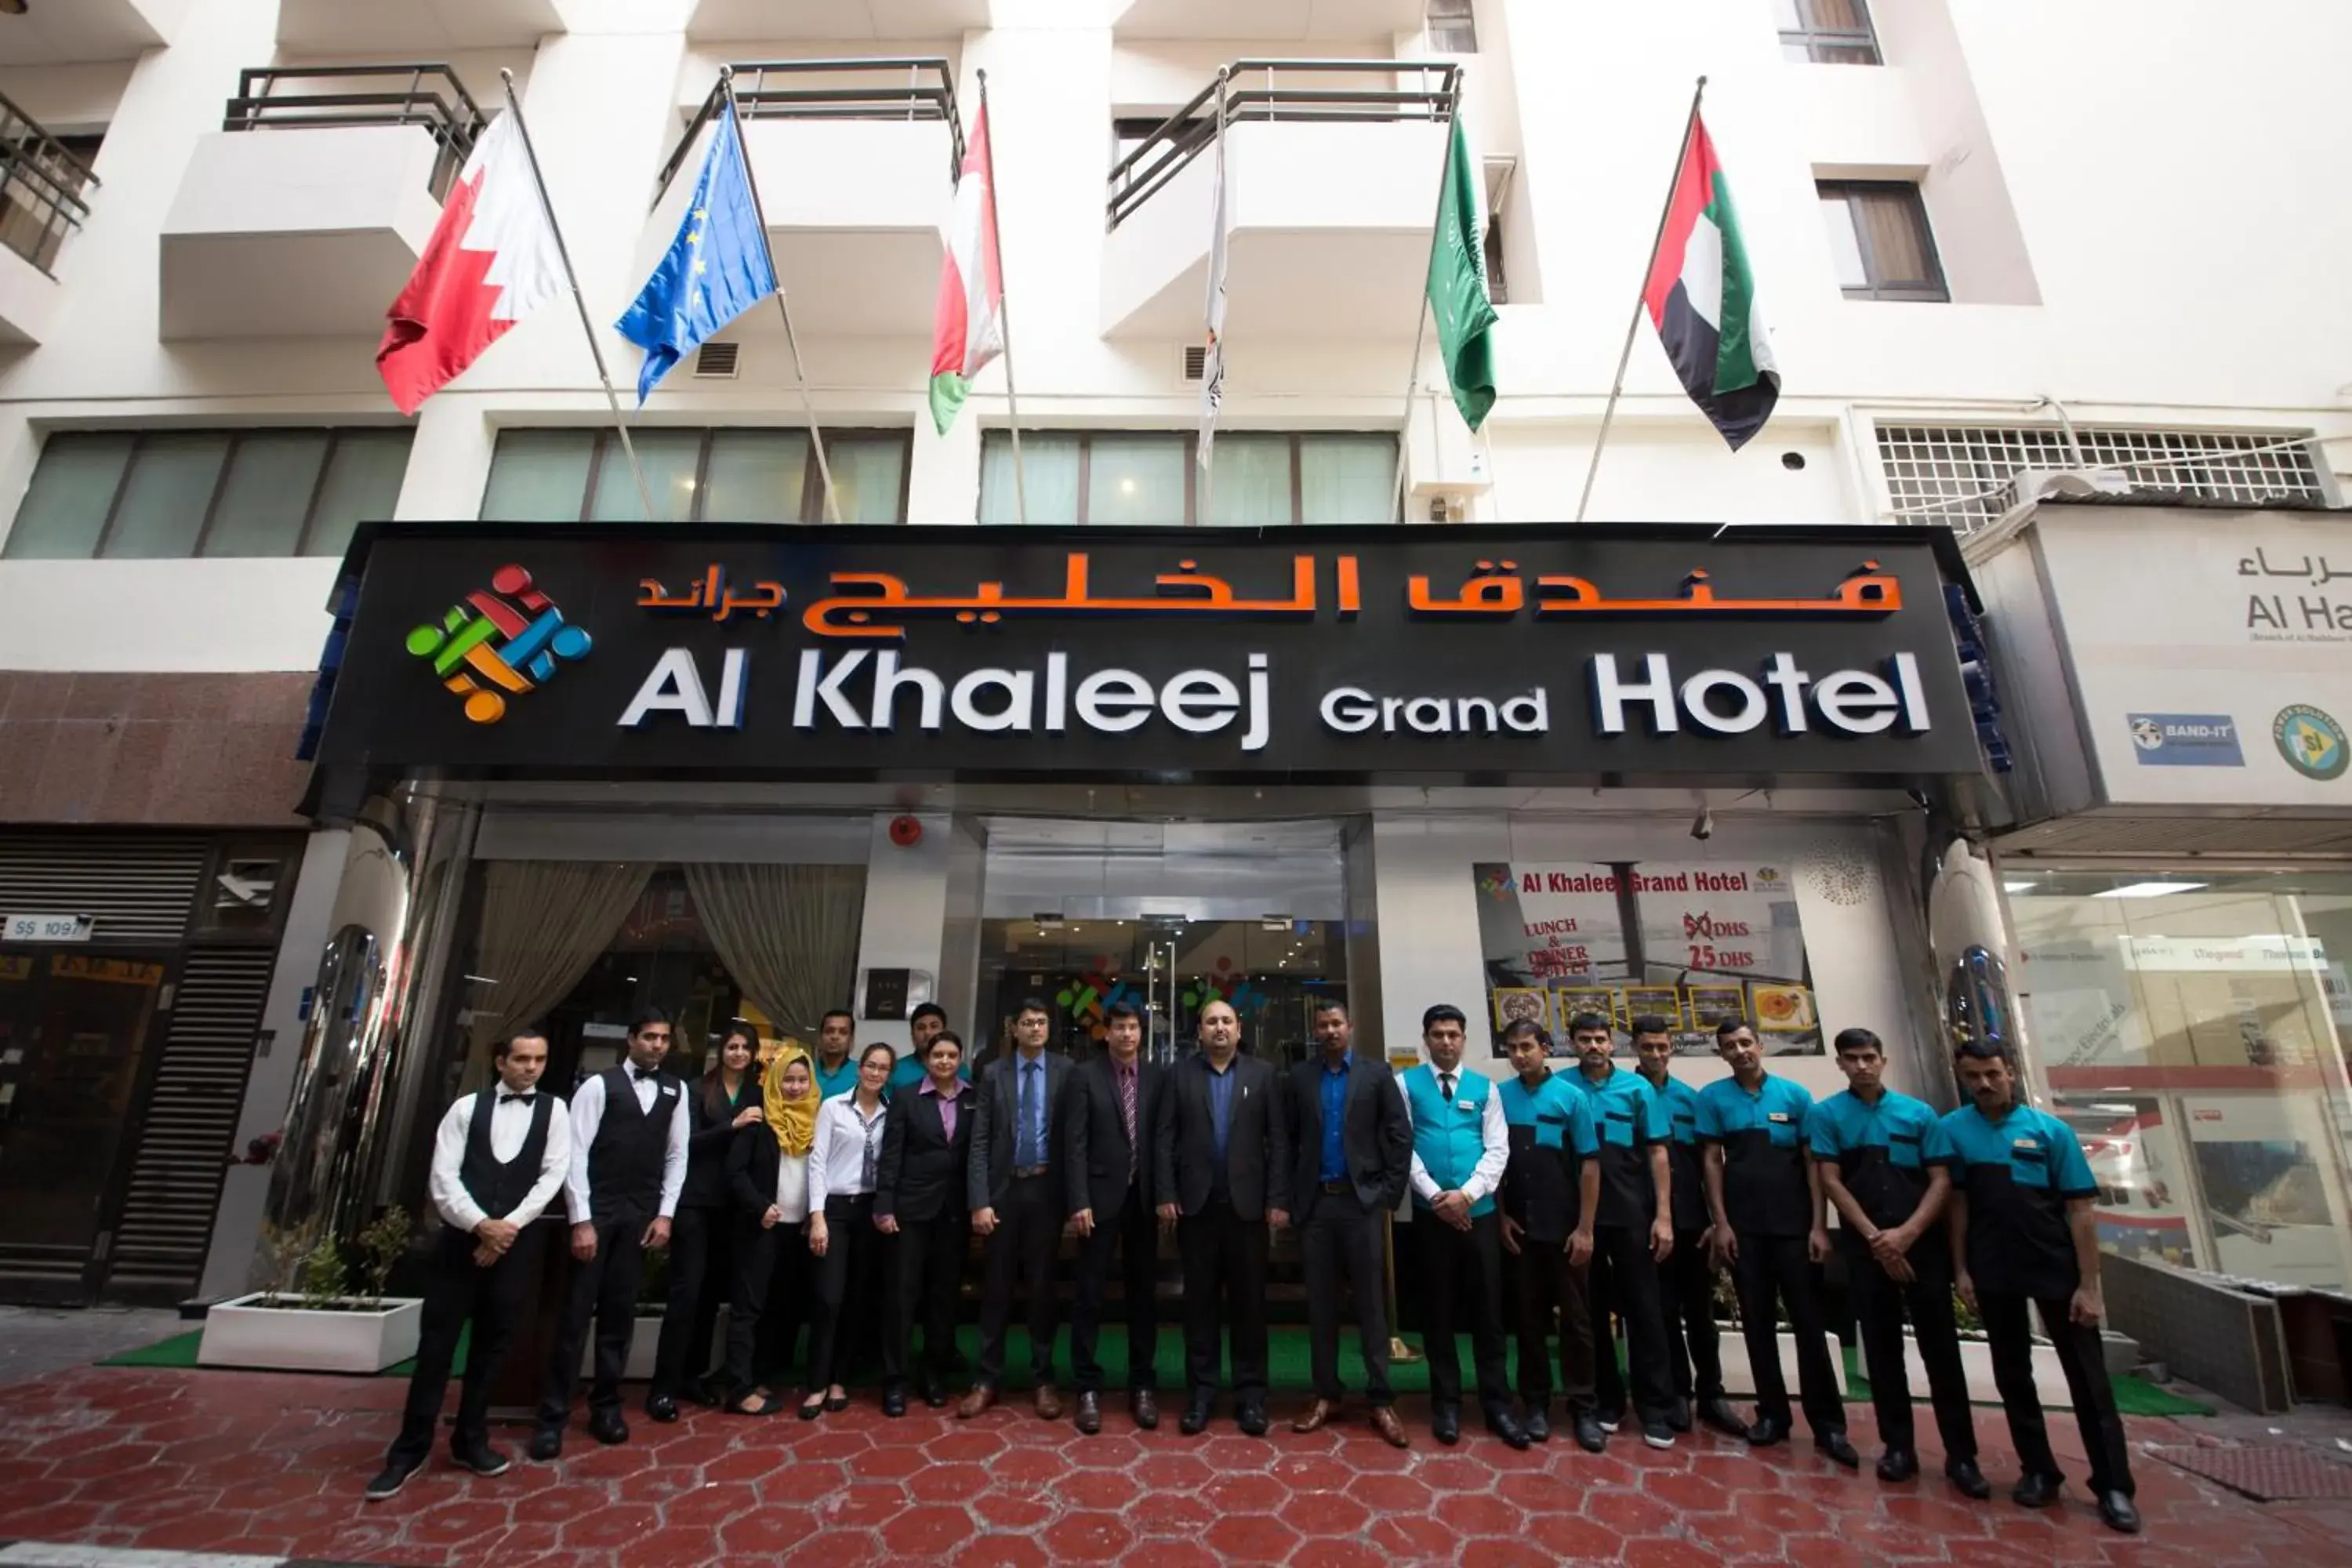 Staff in Al Khaleej Grand Hotel